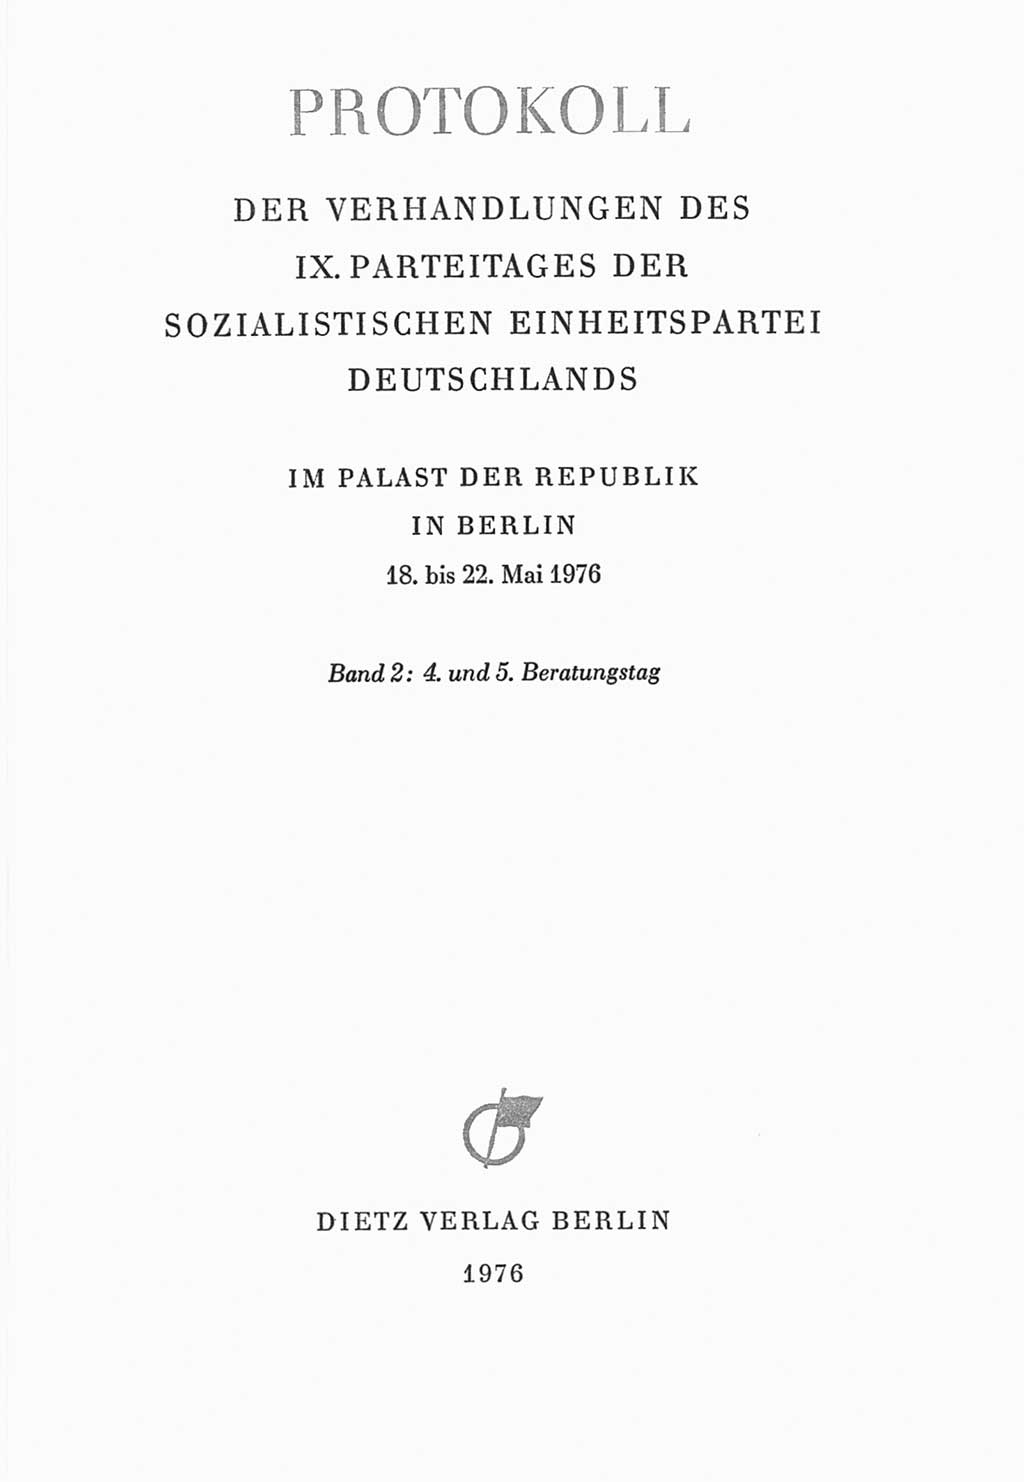 Protokoll der Verhandlungen des Ⅸ. Parteitages der Sozialistischen Einheitspartei Deutschlands (SED) [Deutsche Demokratische Republik (DDR)] 1976, Band 2, Seite 3 (Prot. Verh. Ⅸ. PT SED DDR 1976, Bd. 2, S. 3)